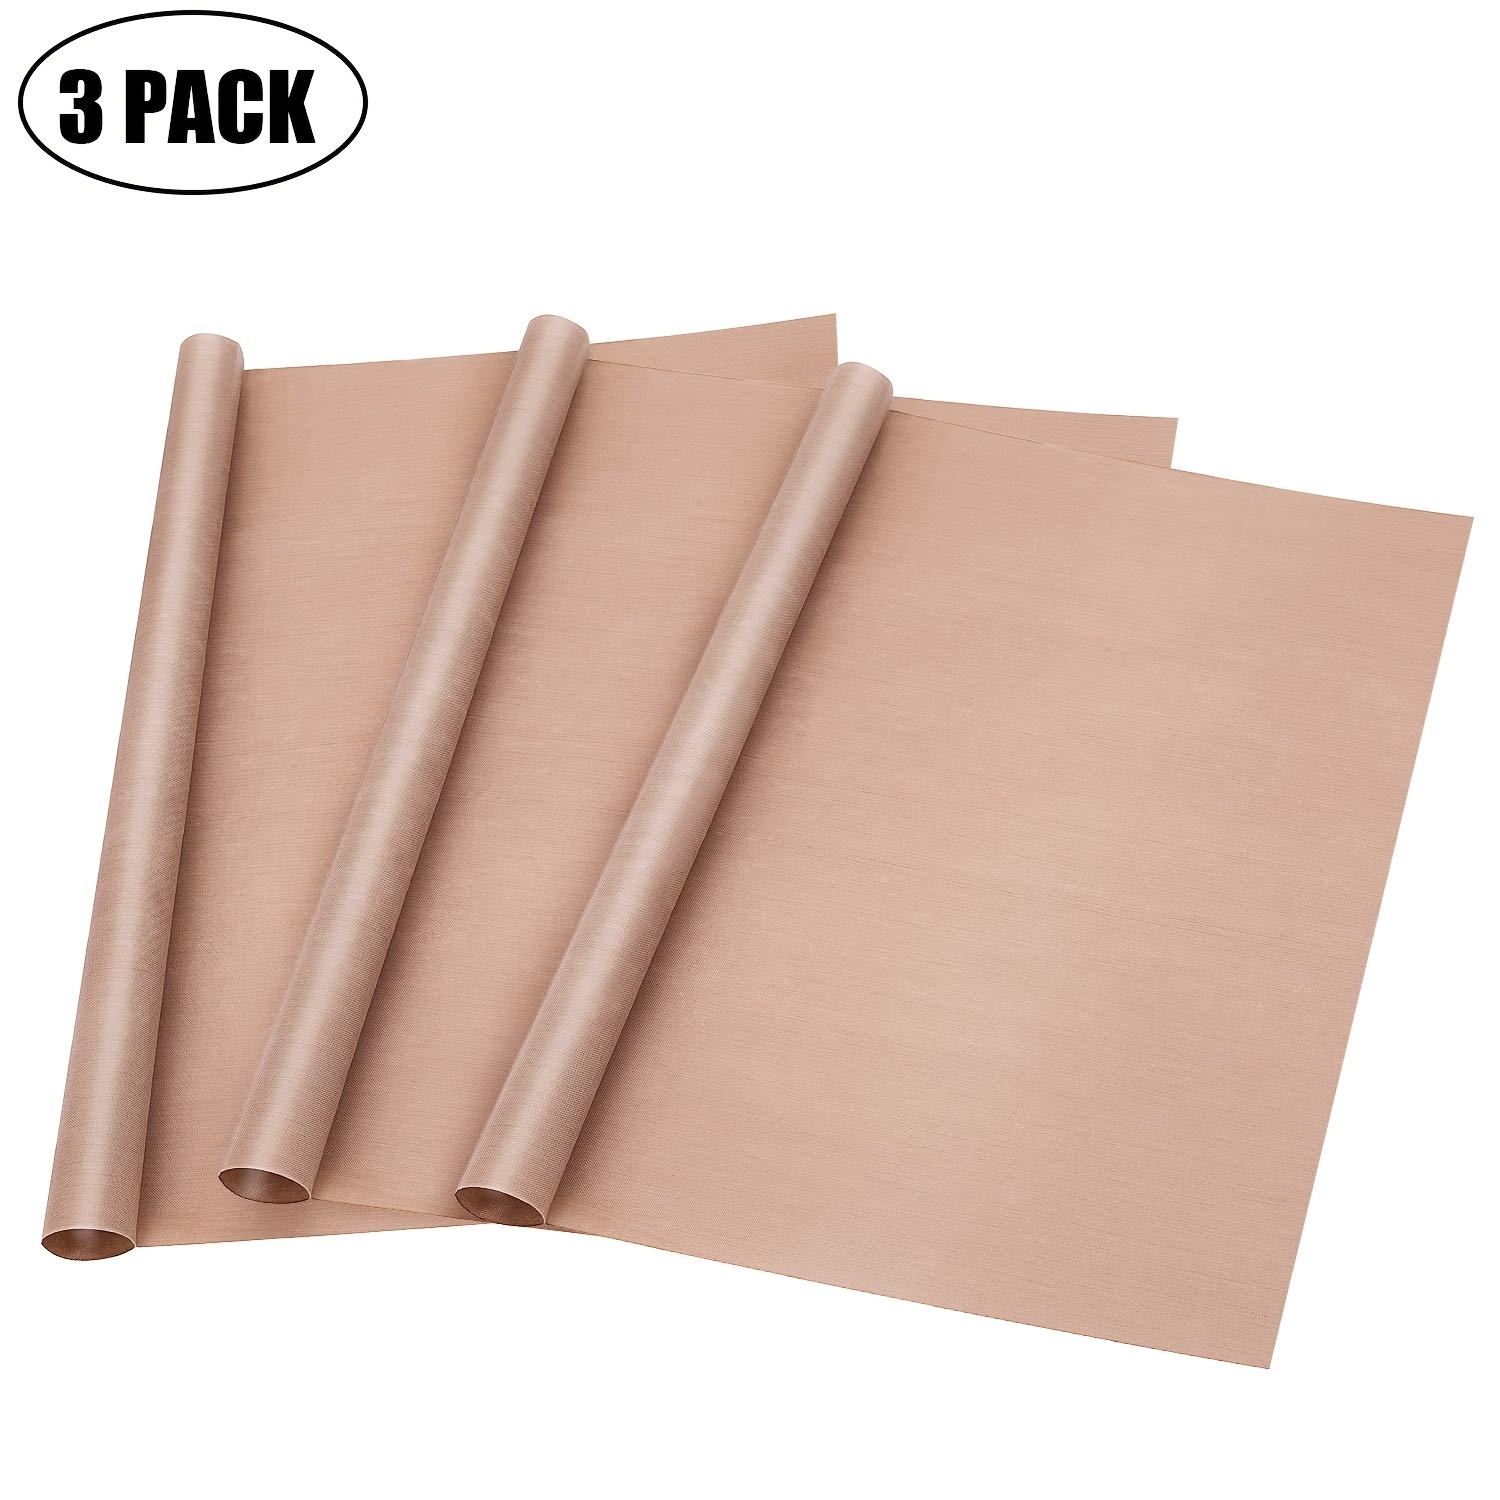 3 Pack PTFE Teflon Sheet for Heat Press Transfer Sheet Non Stick 16 x 20 Heat Transfer Paper Reusable Heat Resistant Craft Mat